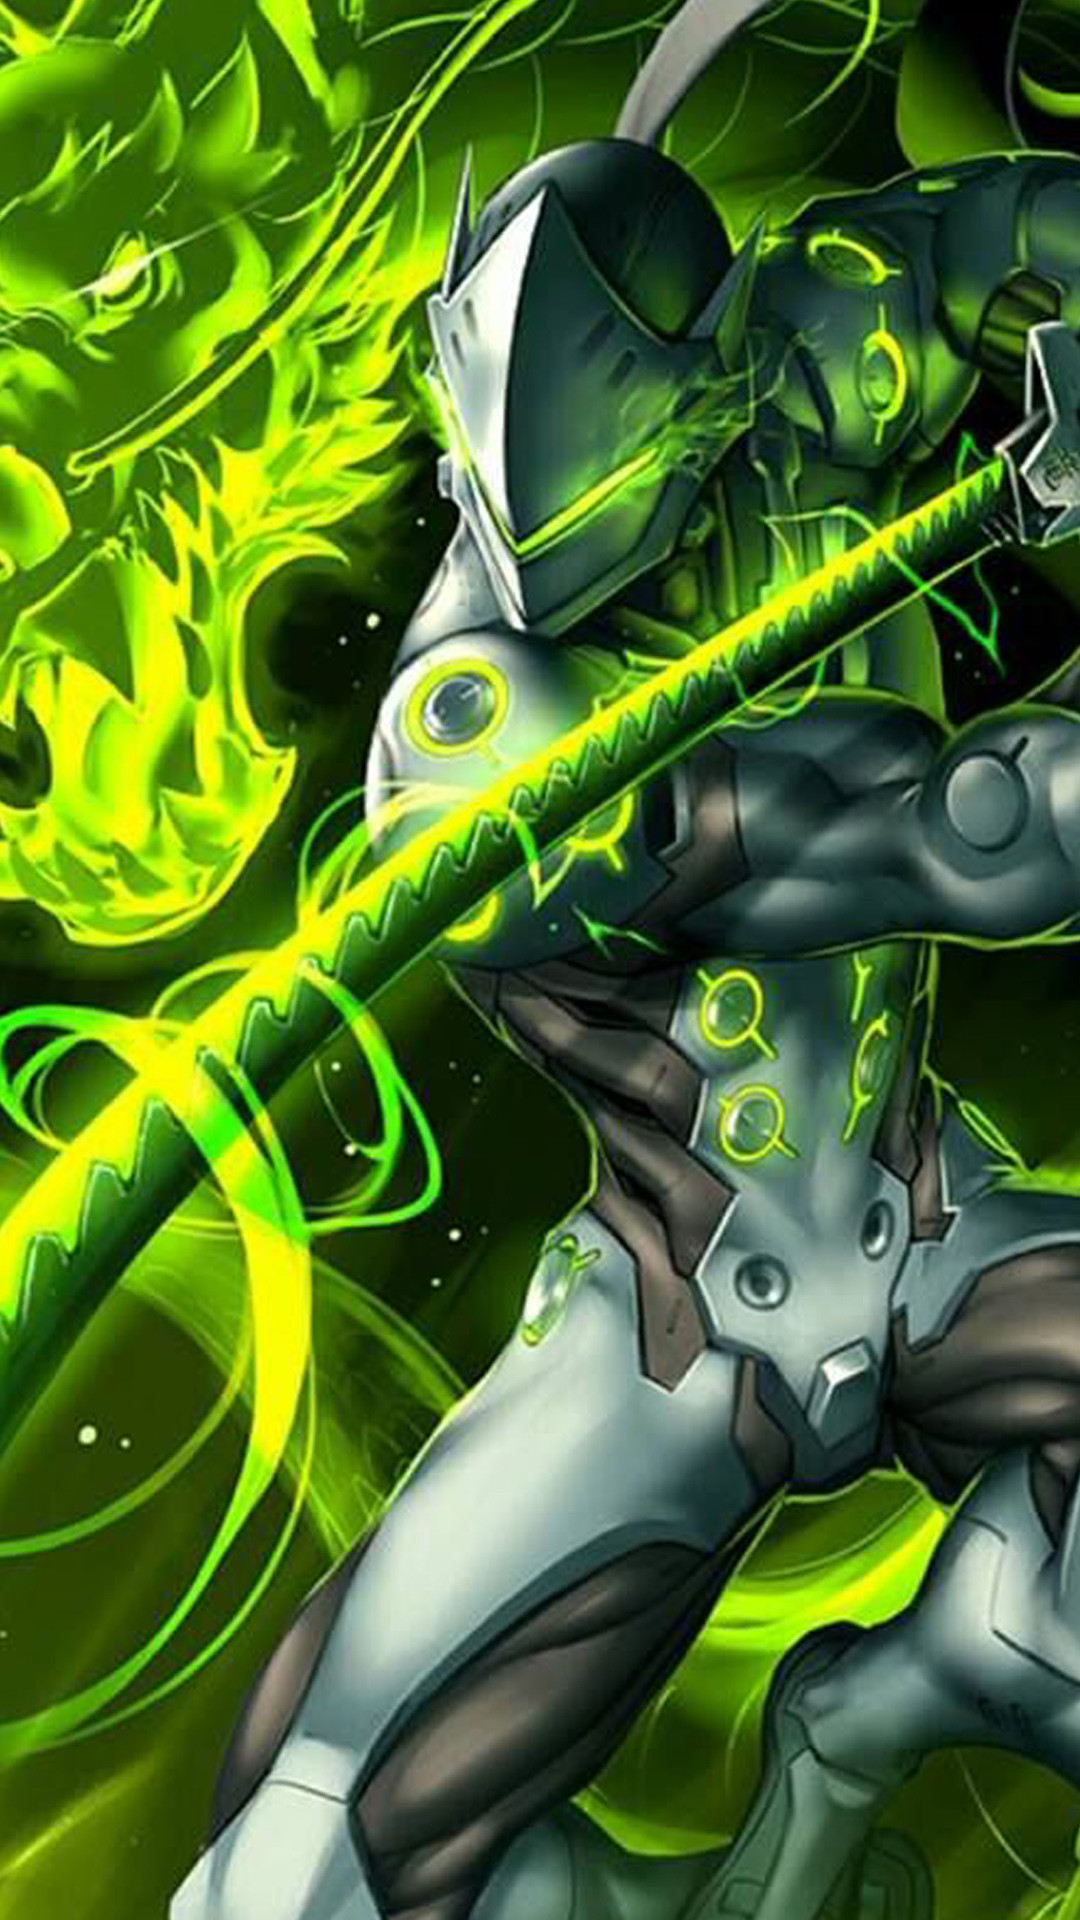 genji hd wallpaper,verde,personaggio fittizio,supereroe,eroe,cg artwork